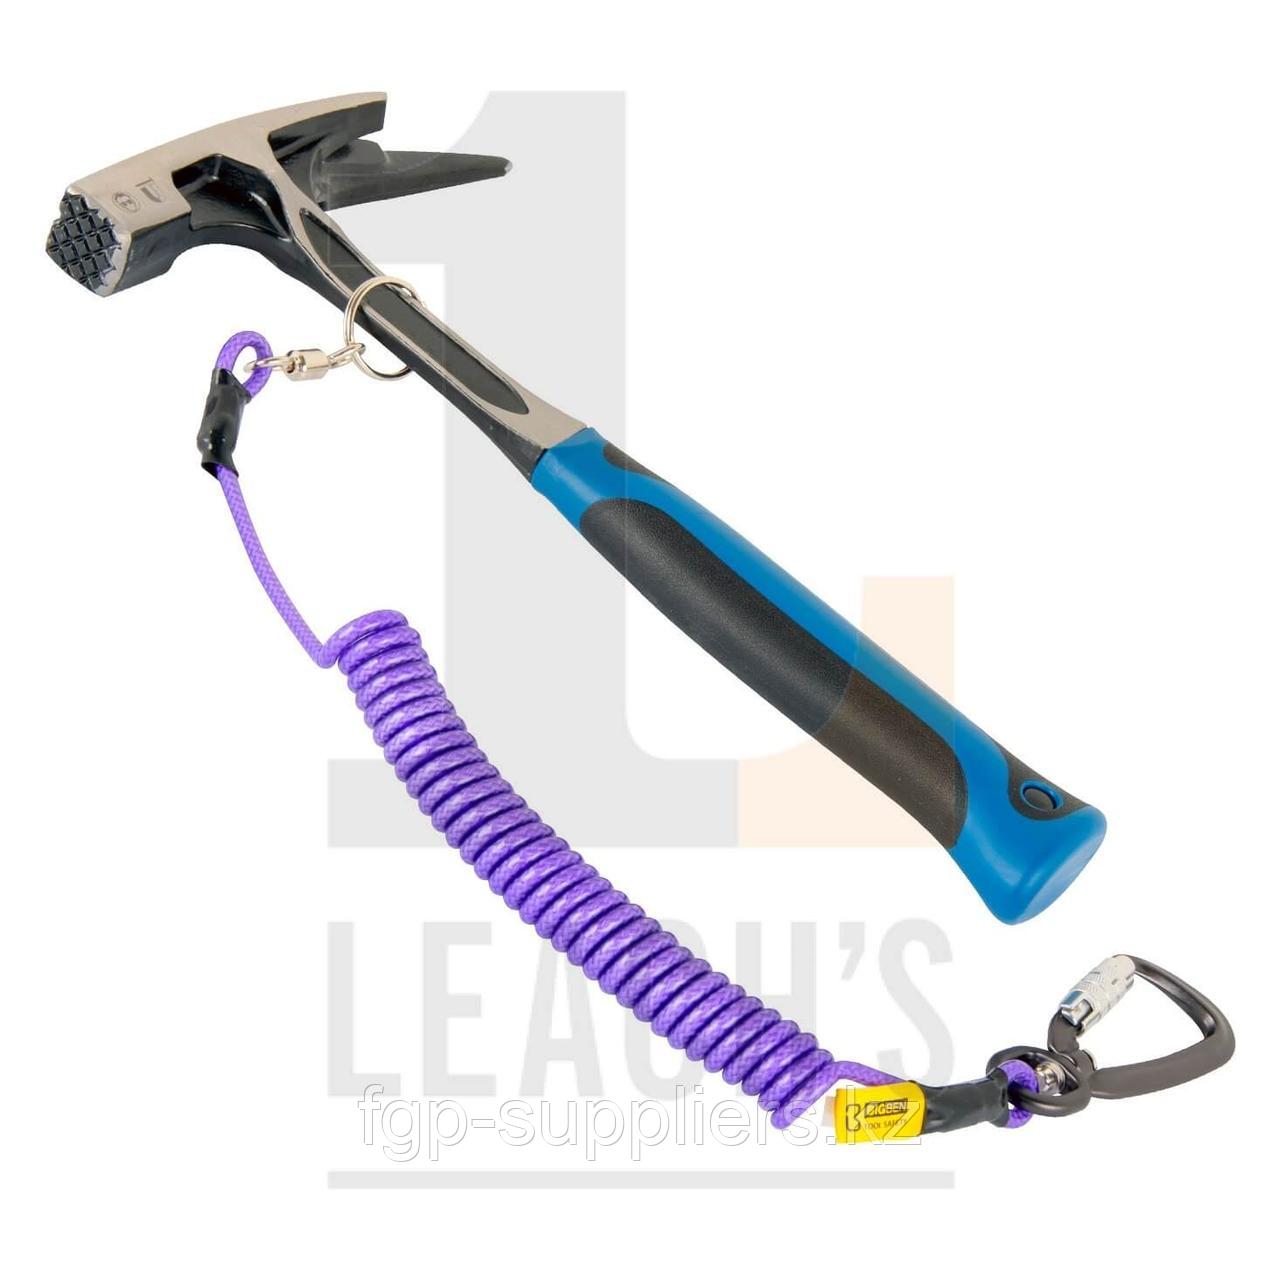 Roofing Pick Hammer, c/w BIG BEN Tool Safety Rope with Swivel Locking Carabina / Кровельный отбойный молоток, в/к BIG Ben шнур держатель инструментов